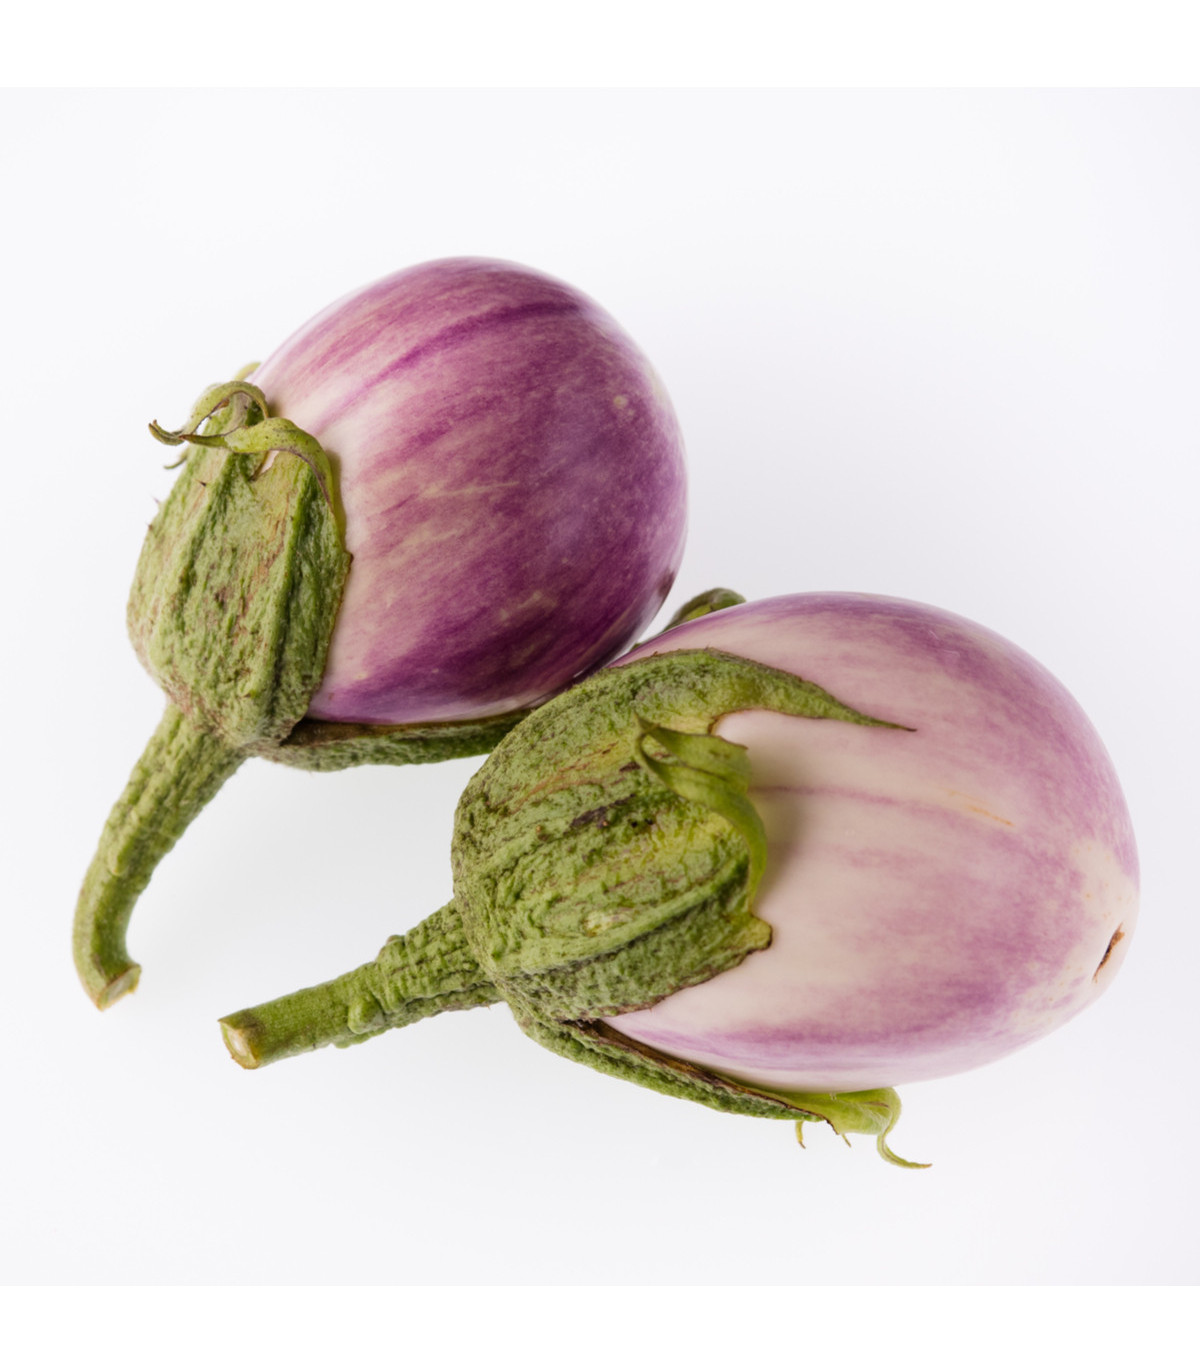 Baklažán - Rosa Bianca - predaj semien baklažánu - 6 ks